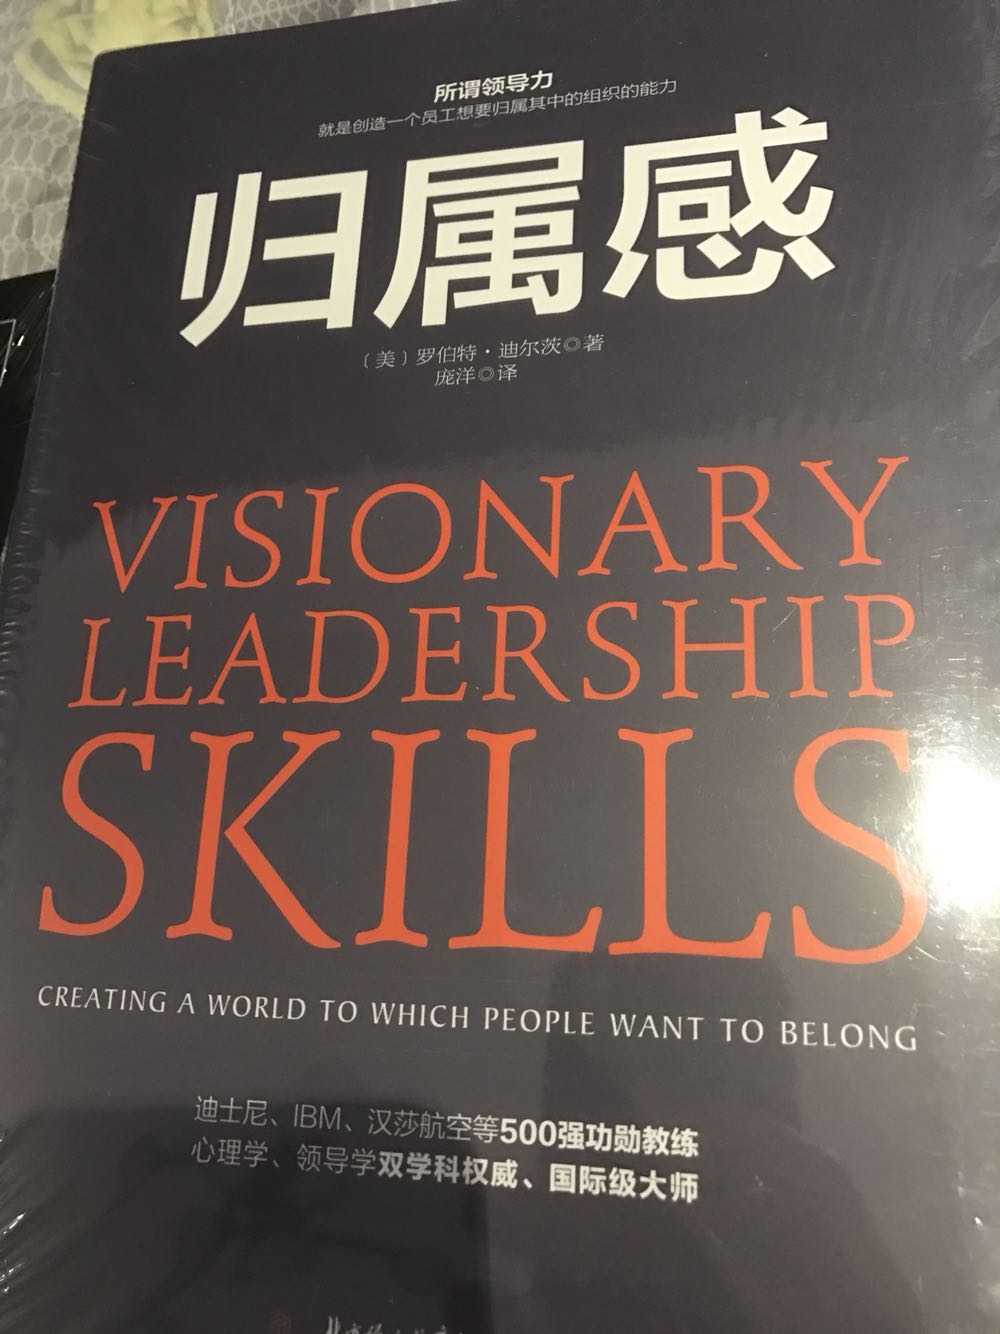 也是关于领导力的书，给团队创造一个氛围，